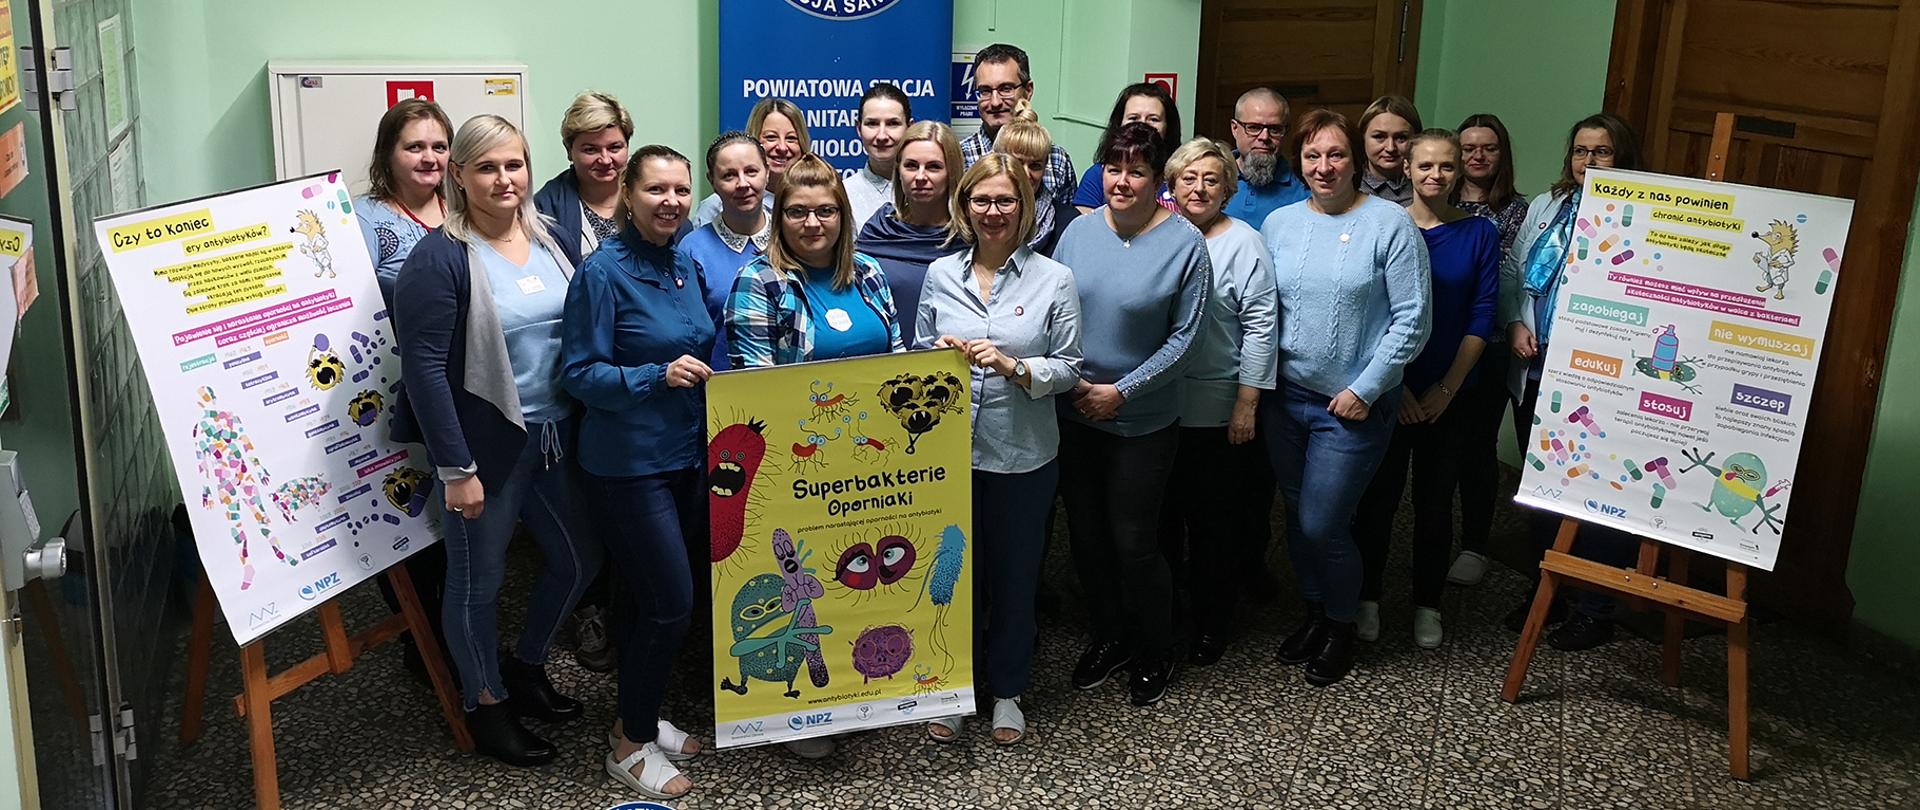 Powiatowa Stacja Sanitarno-Epidemiologiczna w Bytomiu bierze świadomy udział w kampanii pt. „Go Blue for AMR” i promuje wiedzę o antybiotykach.